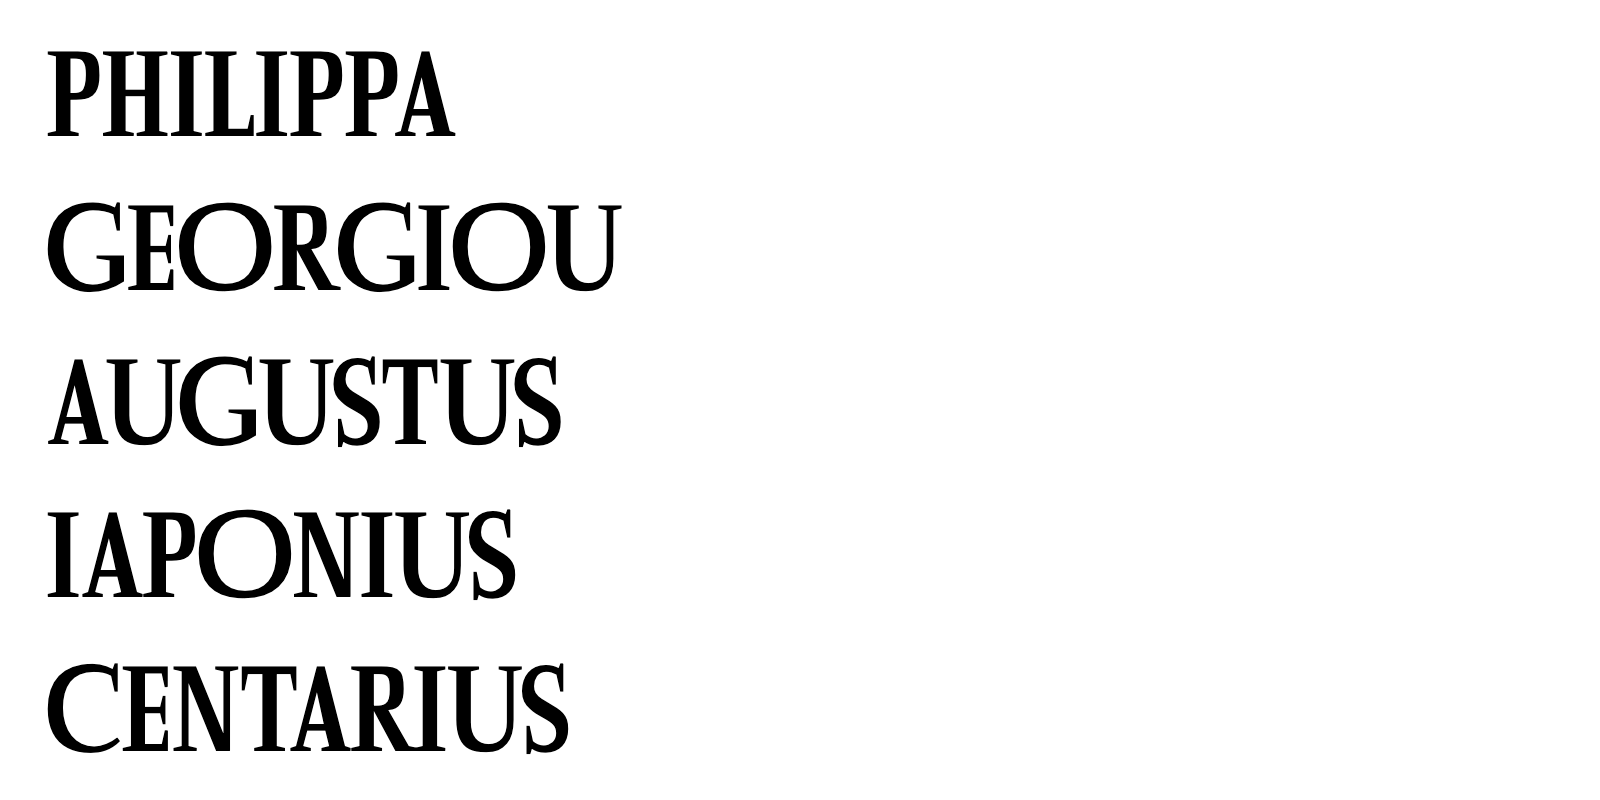 Philippa Georgiou Augustus Iaponius Centarius (gerendert in der Schriftart des Tagesspiegel-Logos)